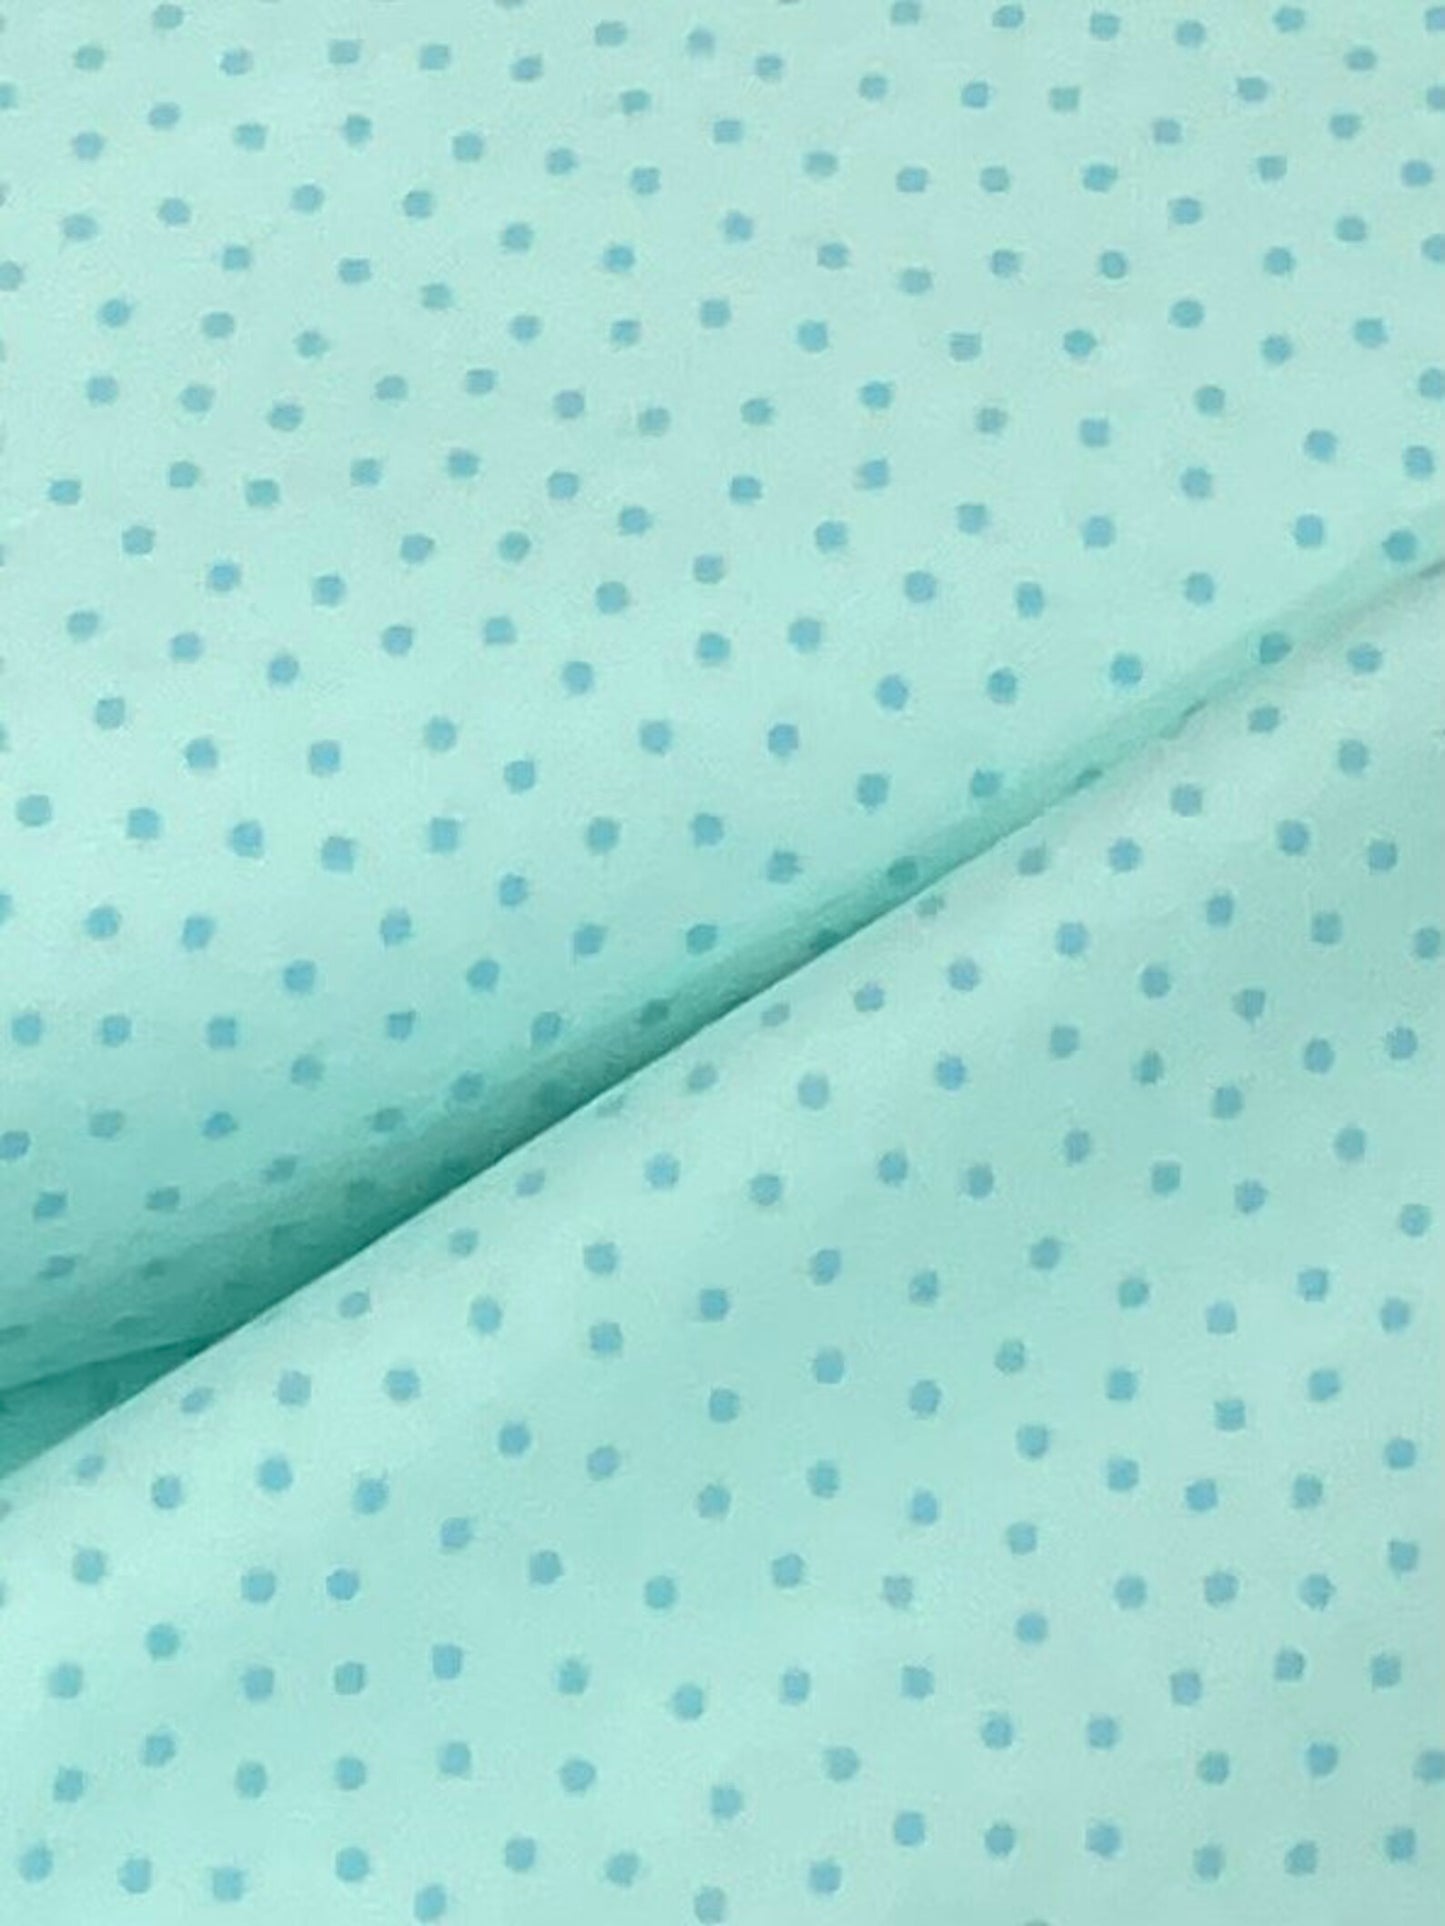 Benartex Flannel Sweet Dreamy Dot Aqua on White Pattern F12493